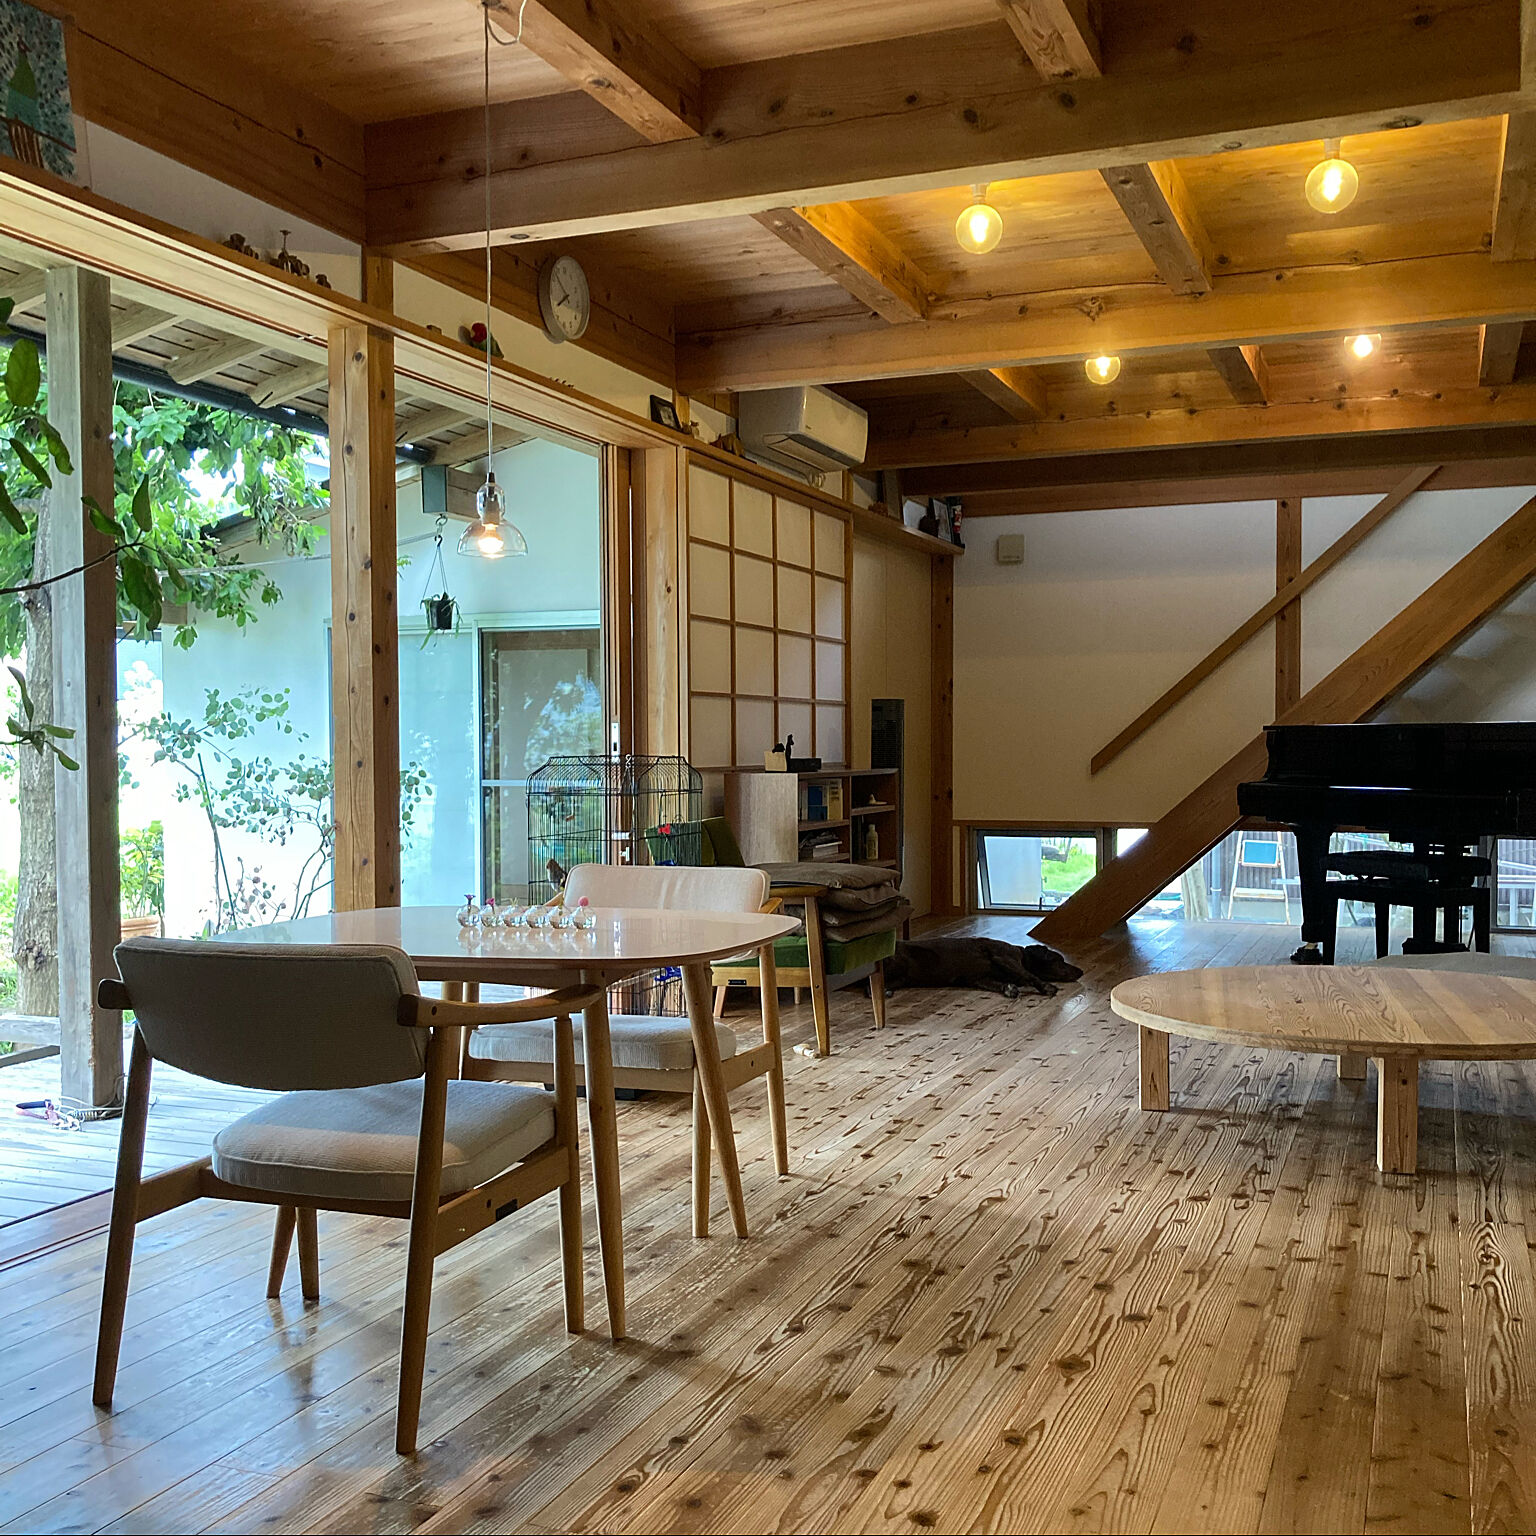 yukikoさん（Room No. 196598）築12年目を迎えた、天竜杉をふんだんに使った自慢の家